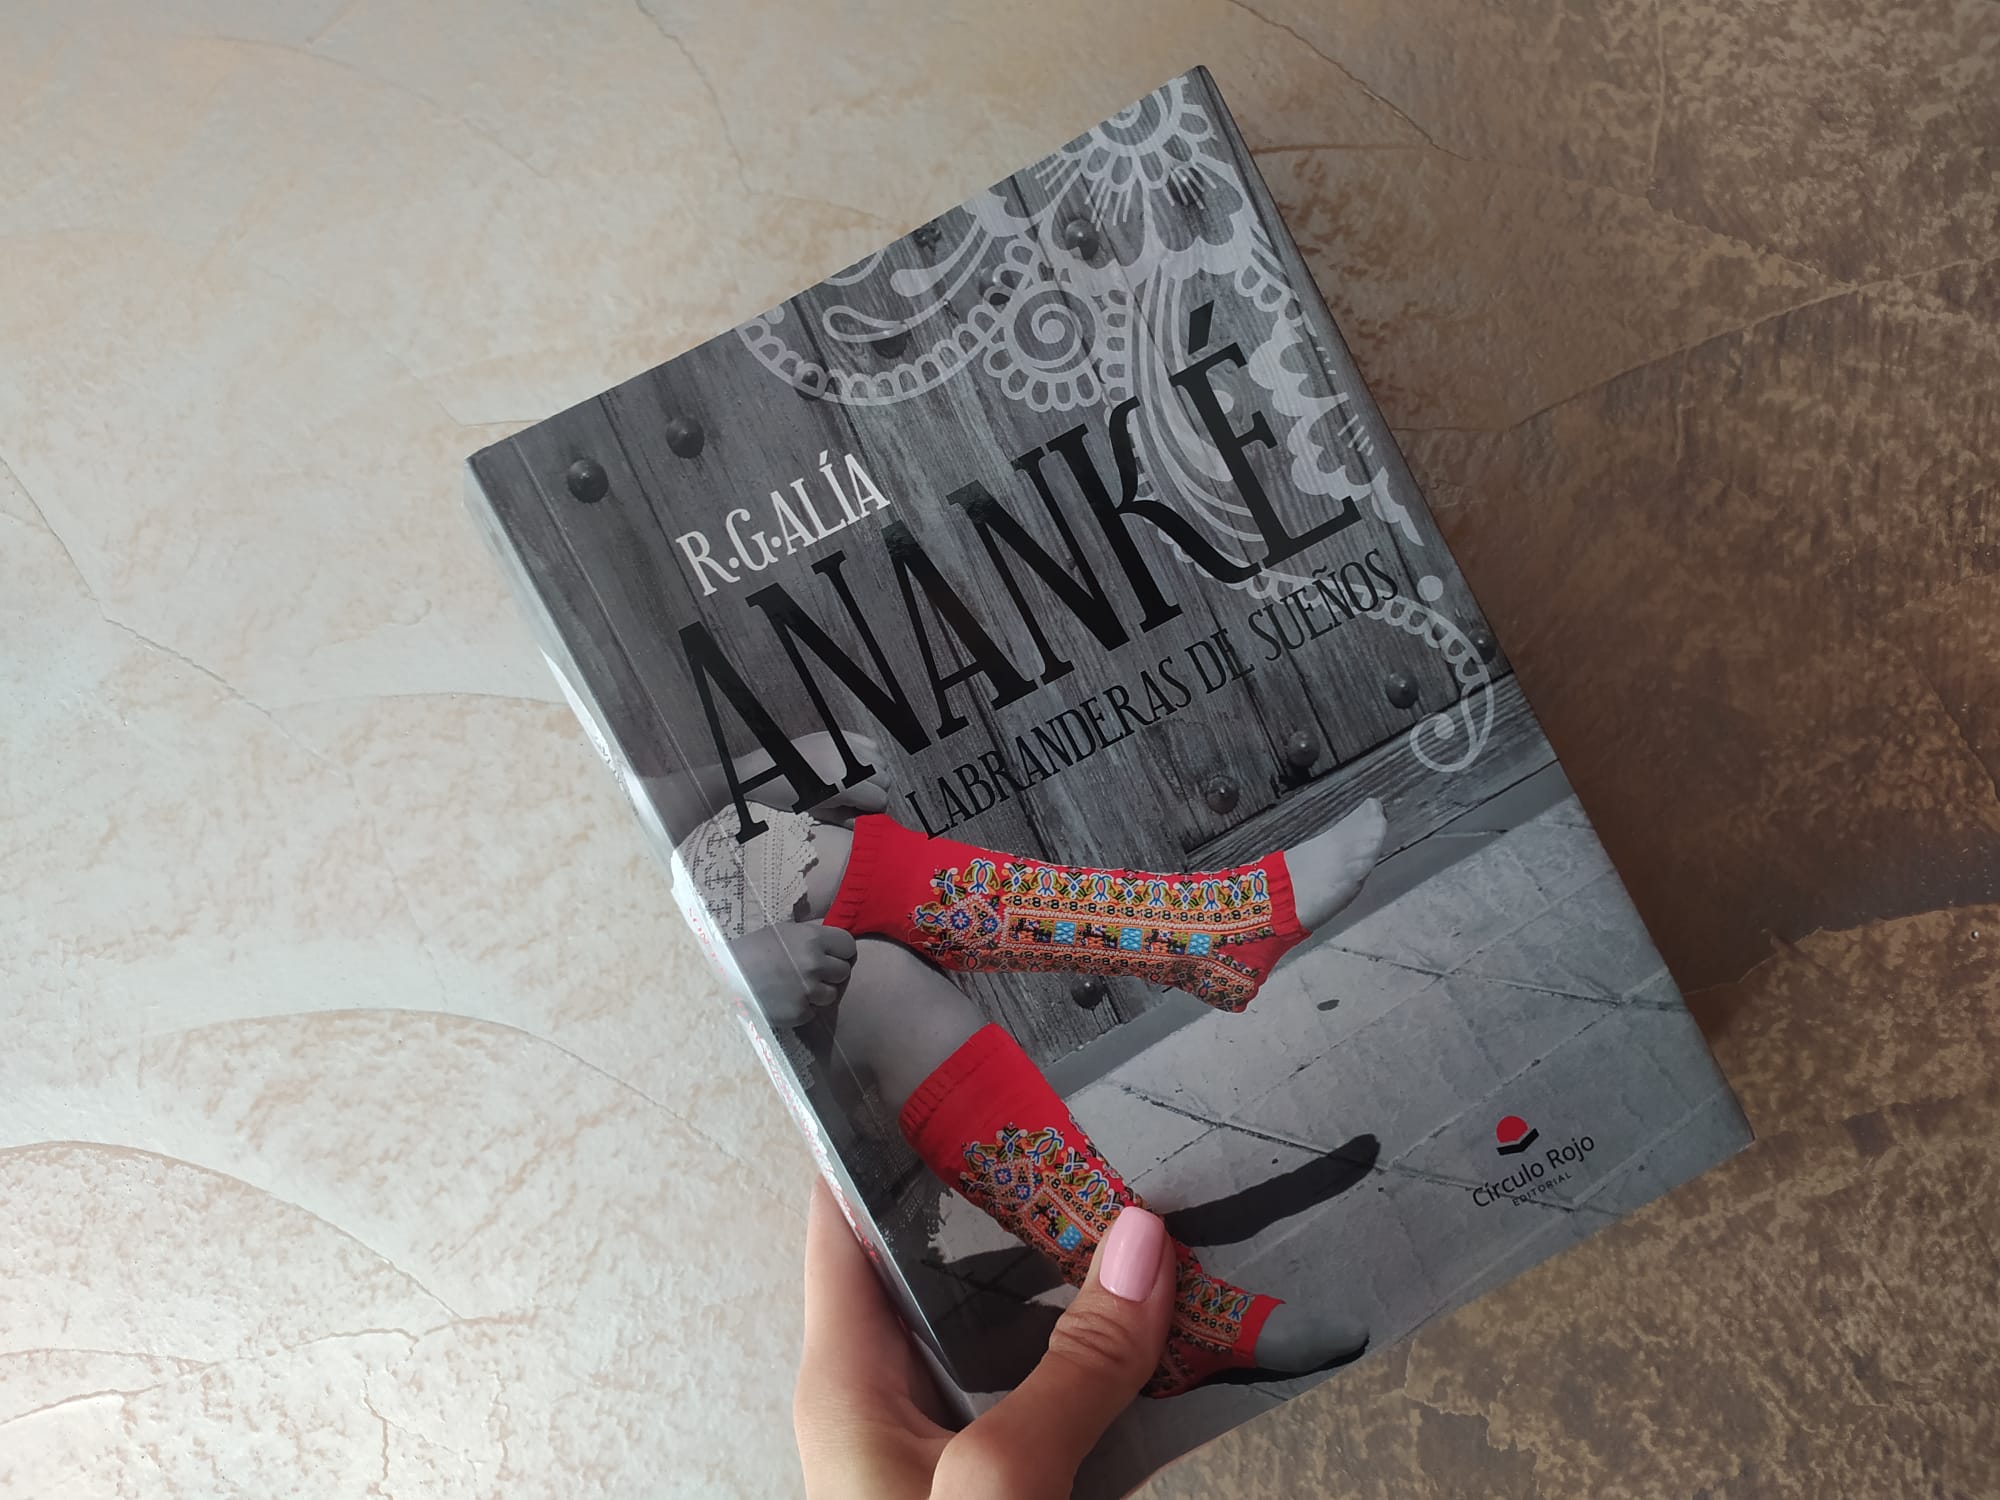 Reseña de “Ananké, labranderas de sueños", de R. G. Alía | Por Daniela González